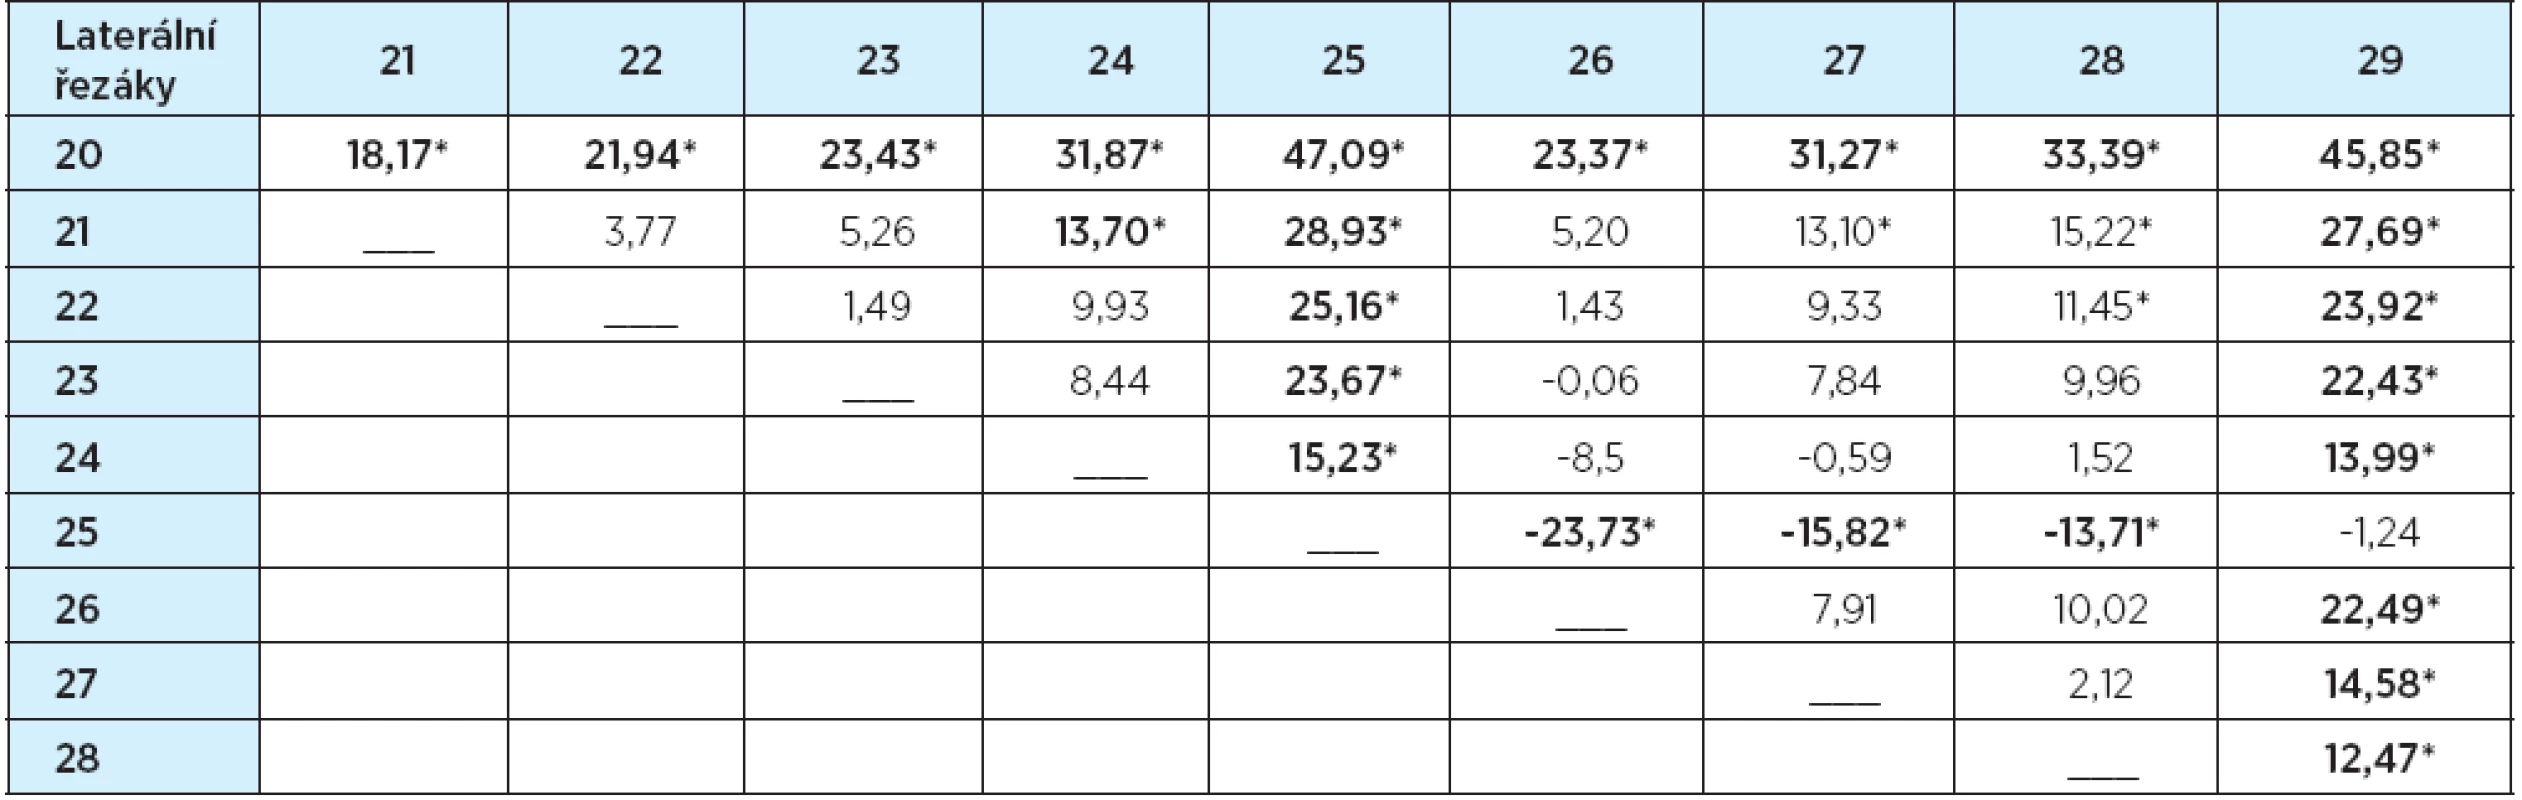 Tvary laterálních řezáků – rozdíly průměrů hodnocení (%)